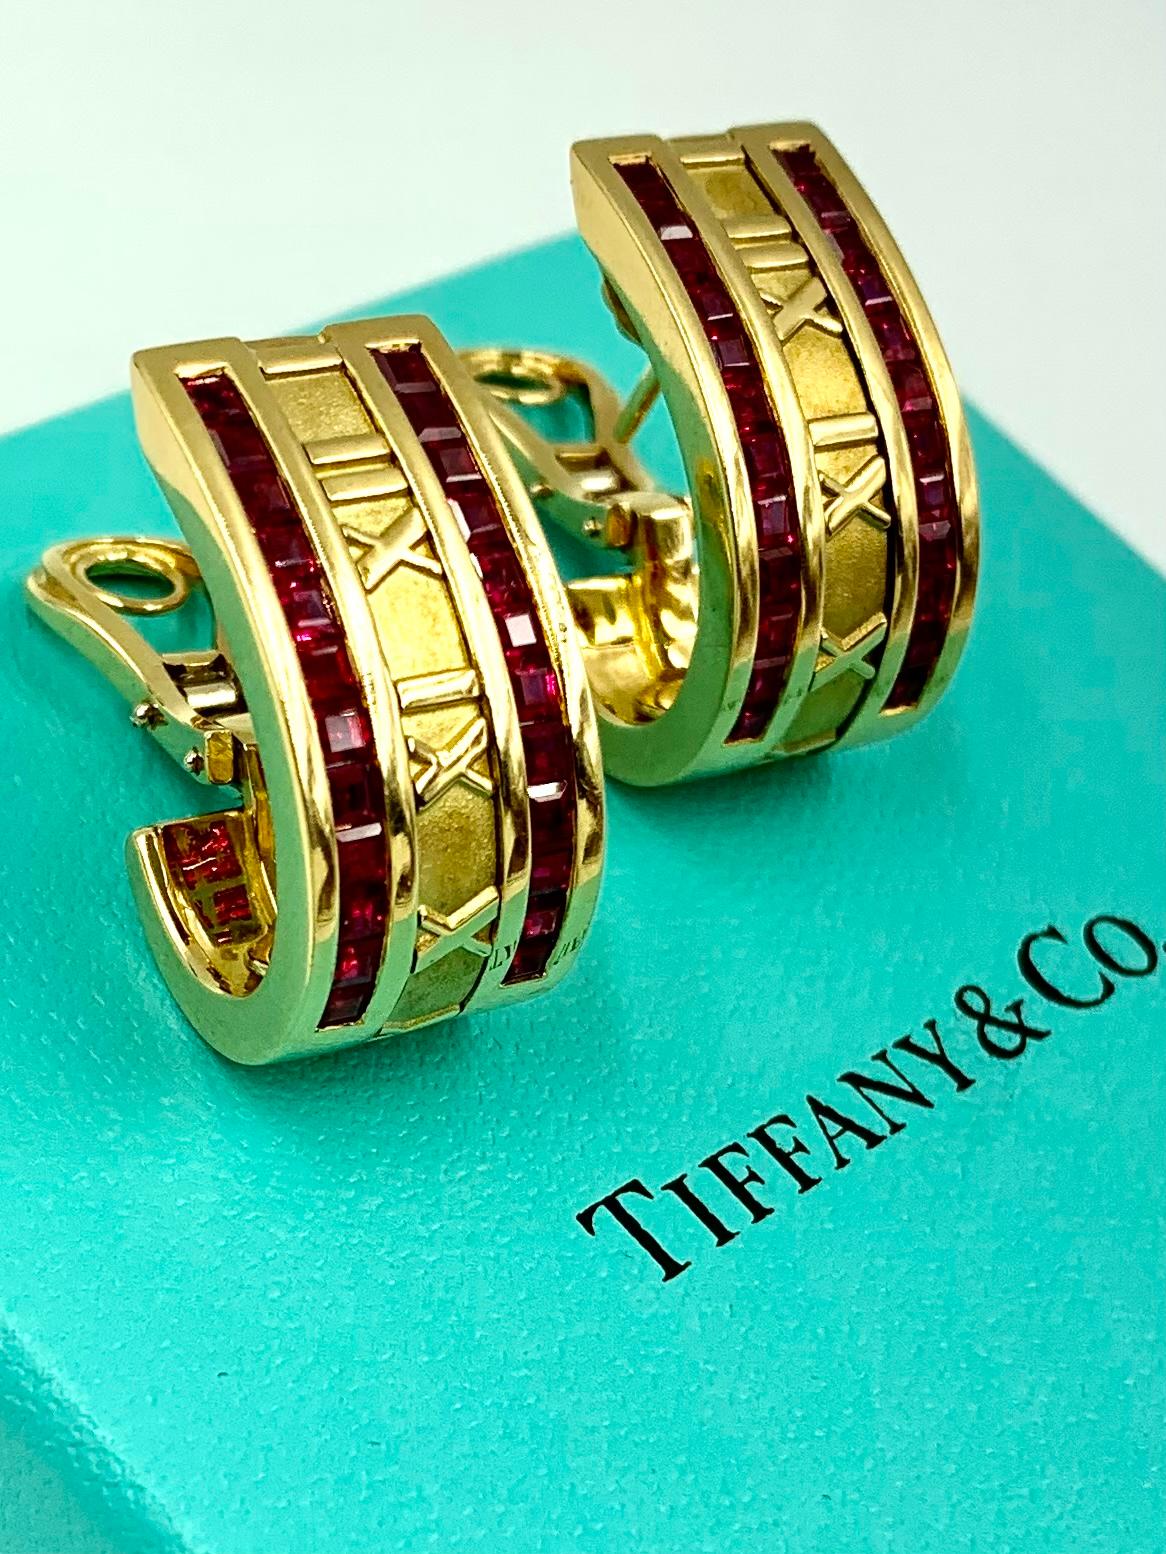 Time and Timing, l'icône de Tiffany & Co. La collection Atlas explore la signification et la valeur de ce bien précieux. Chacune de ces superbes boucles d'oreilles comporte 24 rubis taillés en carré, coïncidant avec les 24 heures de chaque jour.